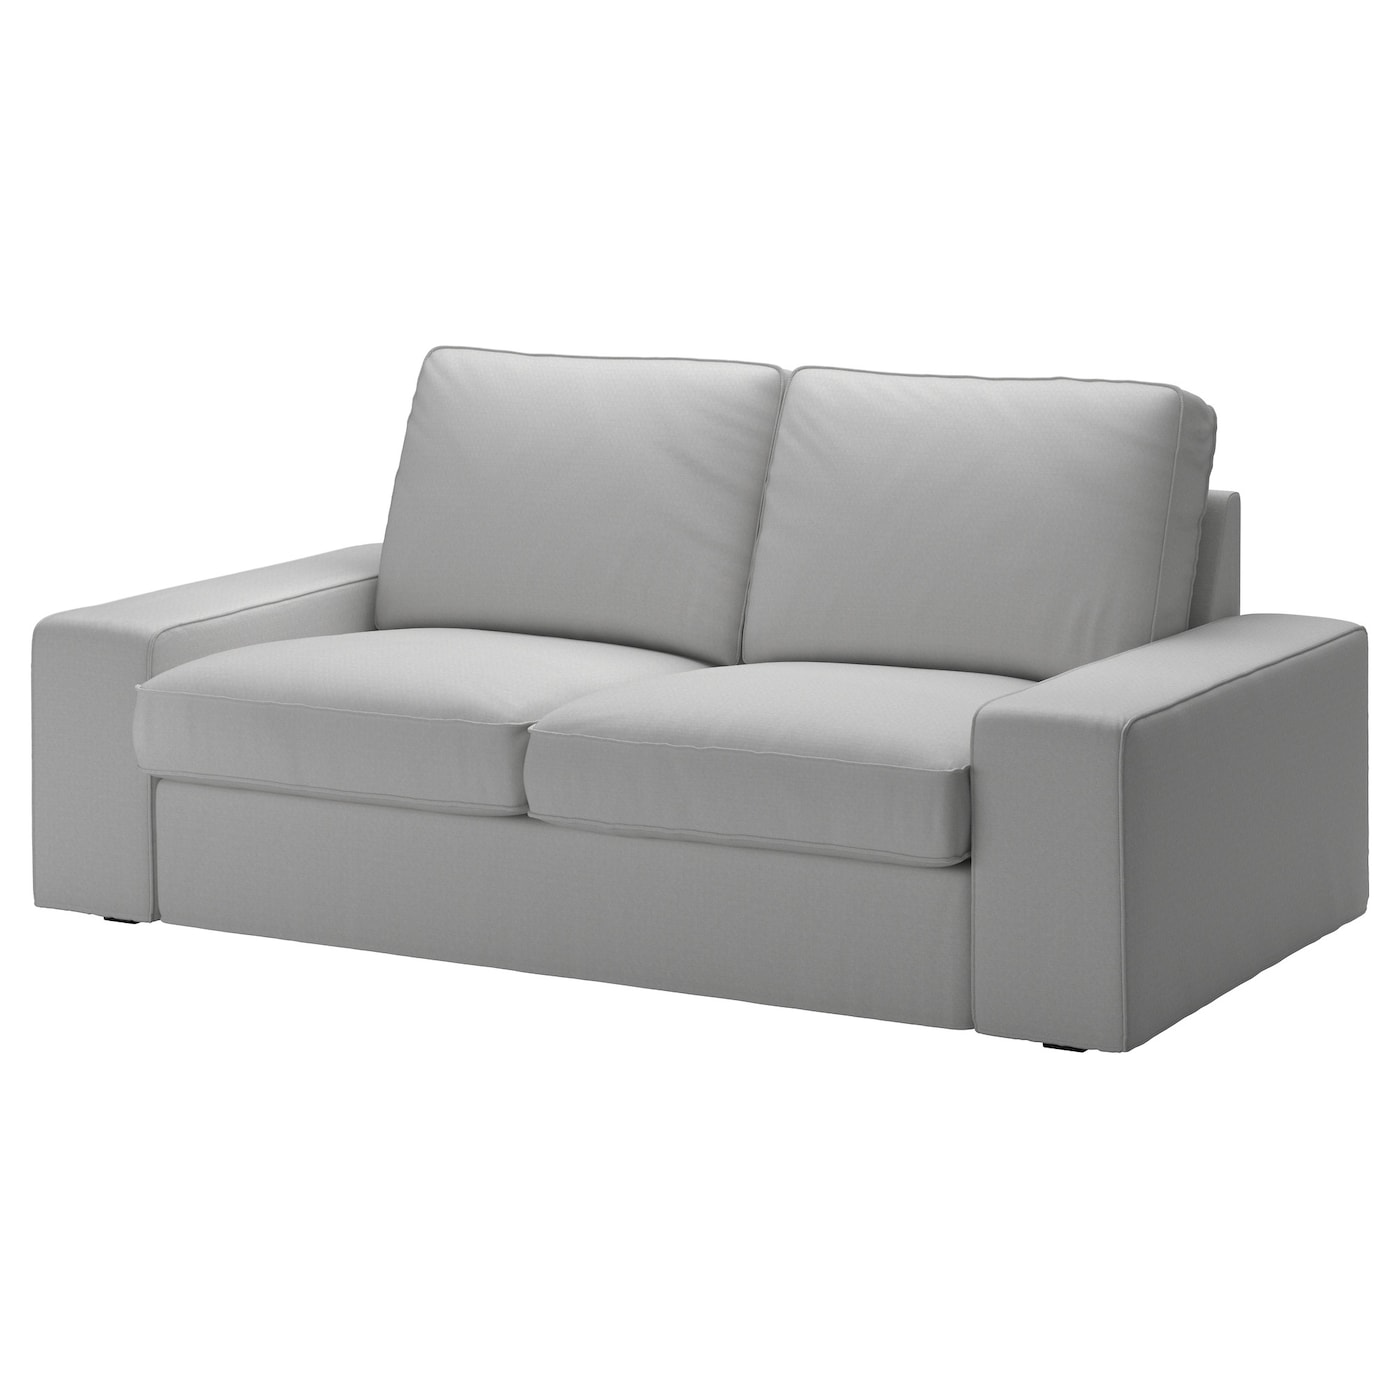 KIVIK Bezug 2er-Sofa  - extra Bezüge - Möbel Ideen für dein Zuhause von Home Trends. Möbel Trends von Social Media Influencer für dein Skandi Zuhause.